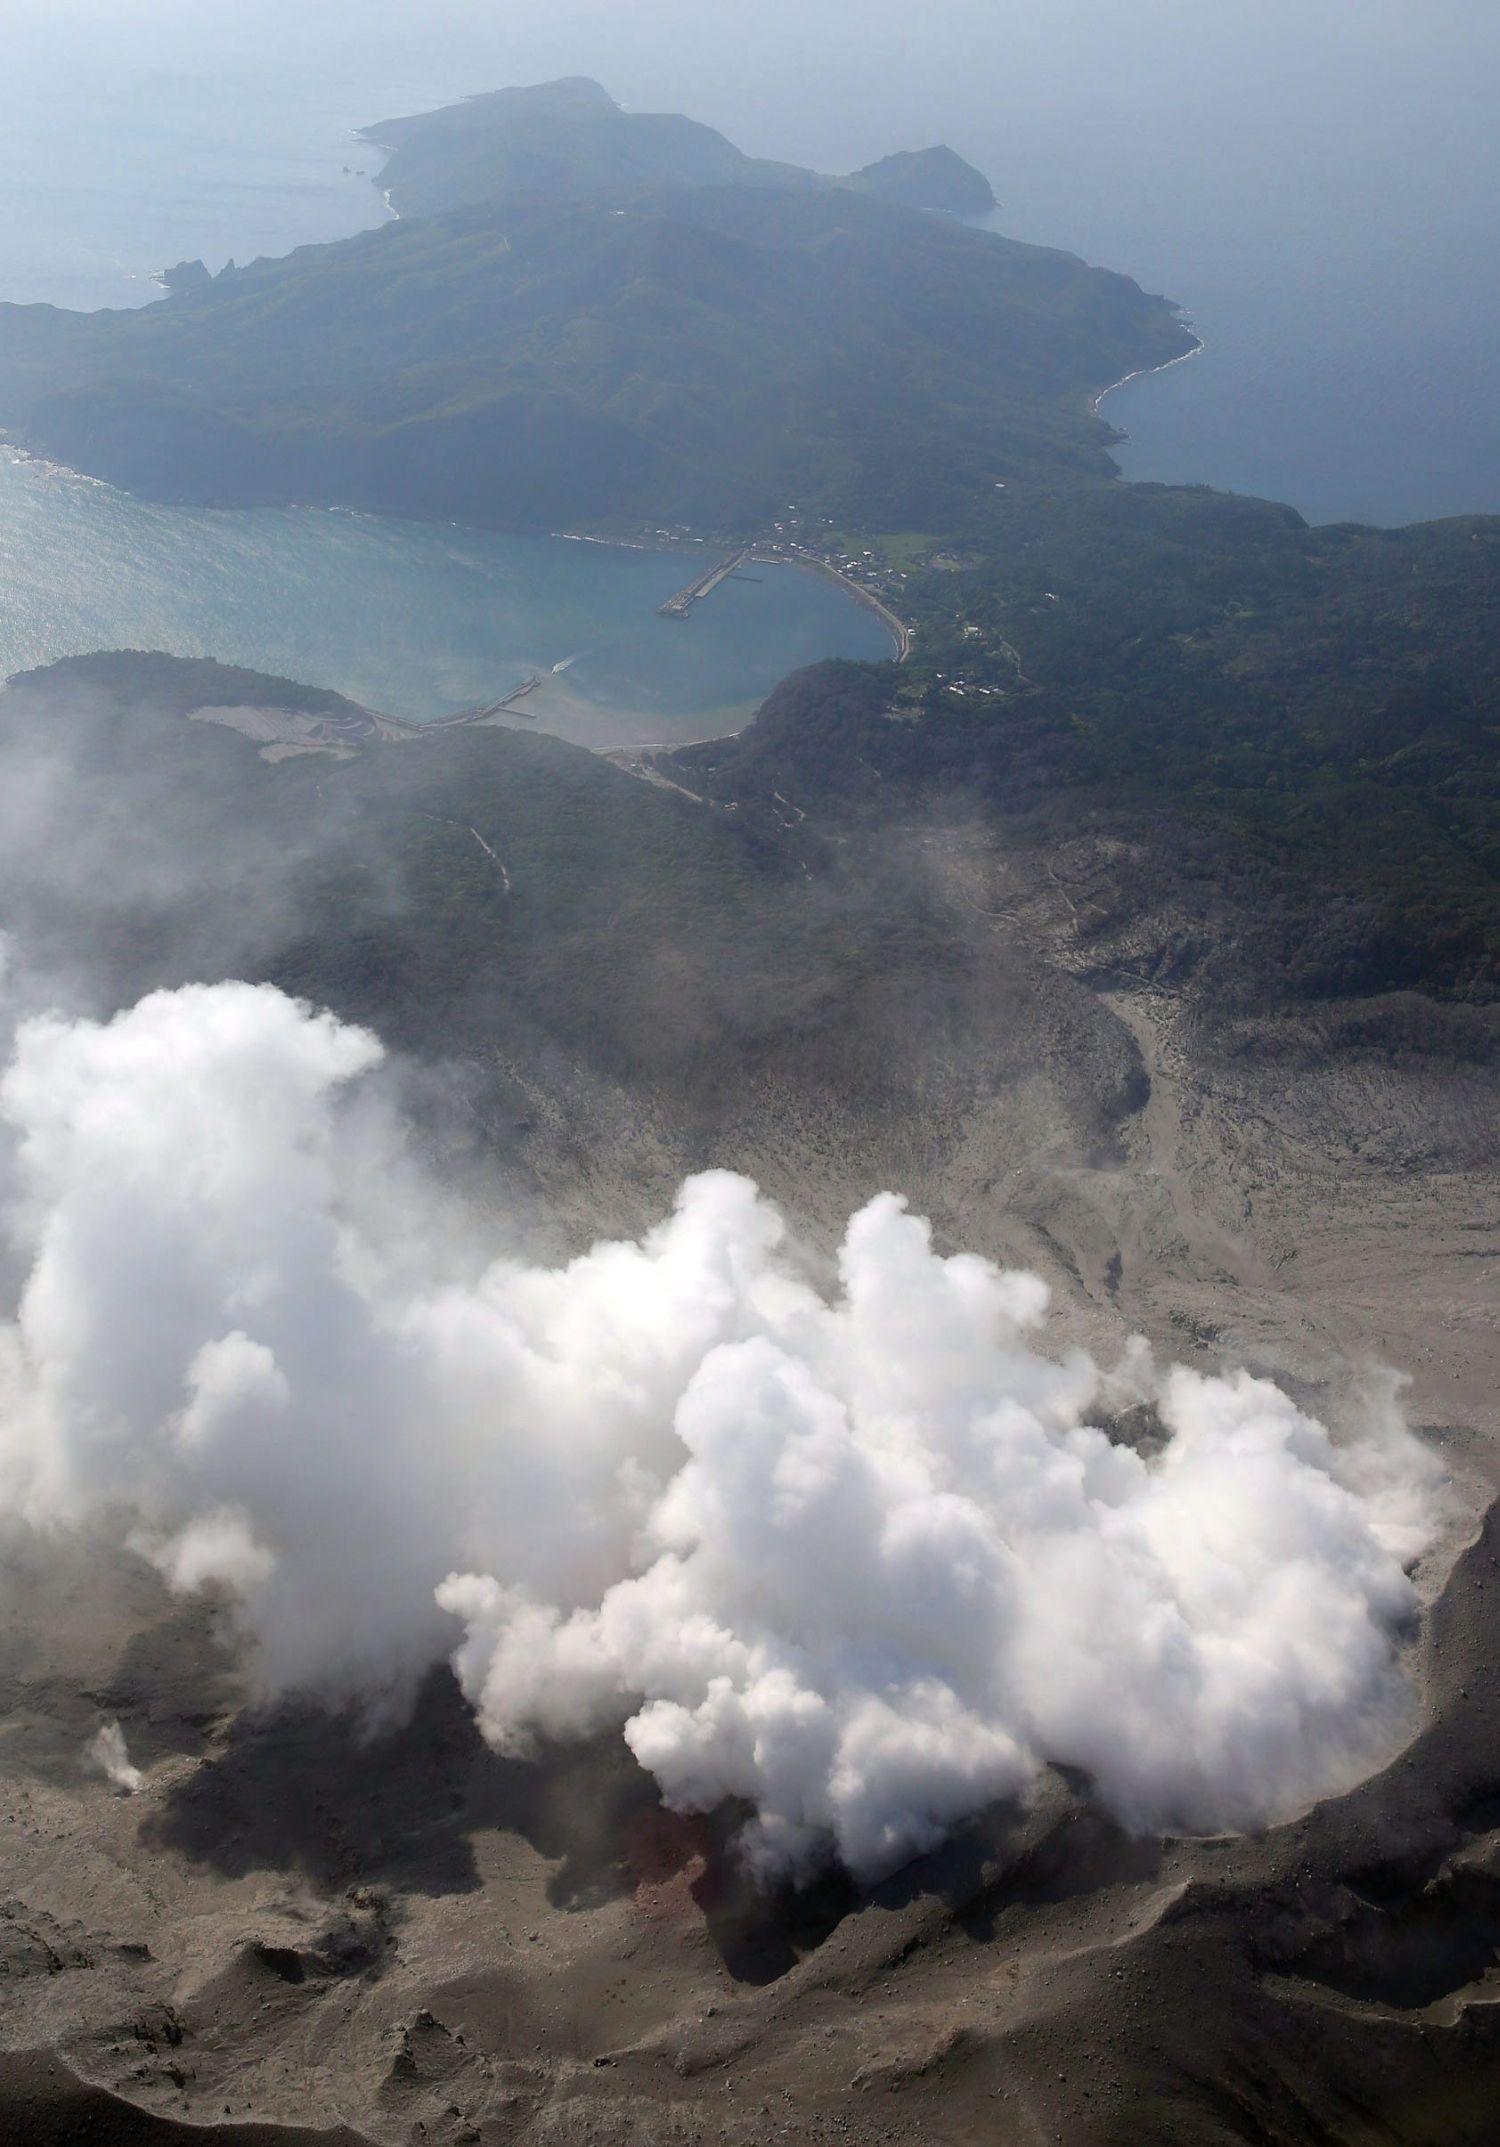 Légi felvétel egy kitörő gőzfelhőről a Sindake hegyen, a Rjúkjú-szigetekhez tartozó Kucsinoerabu szigeten 2015. május 29-én. A vulkánkitörés miatt a hatóságok elrendelték a teljes helyi lakosság, mintegy 150 fő kimenekítését.